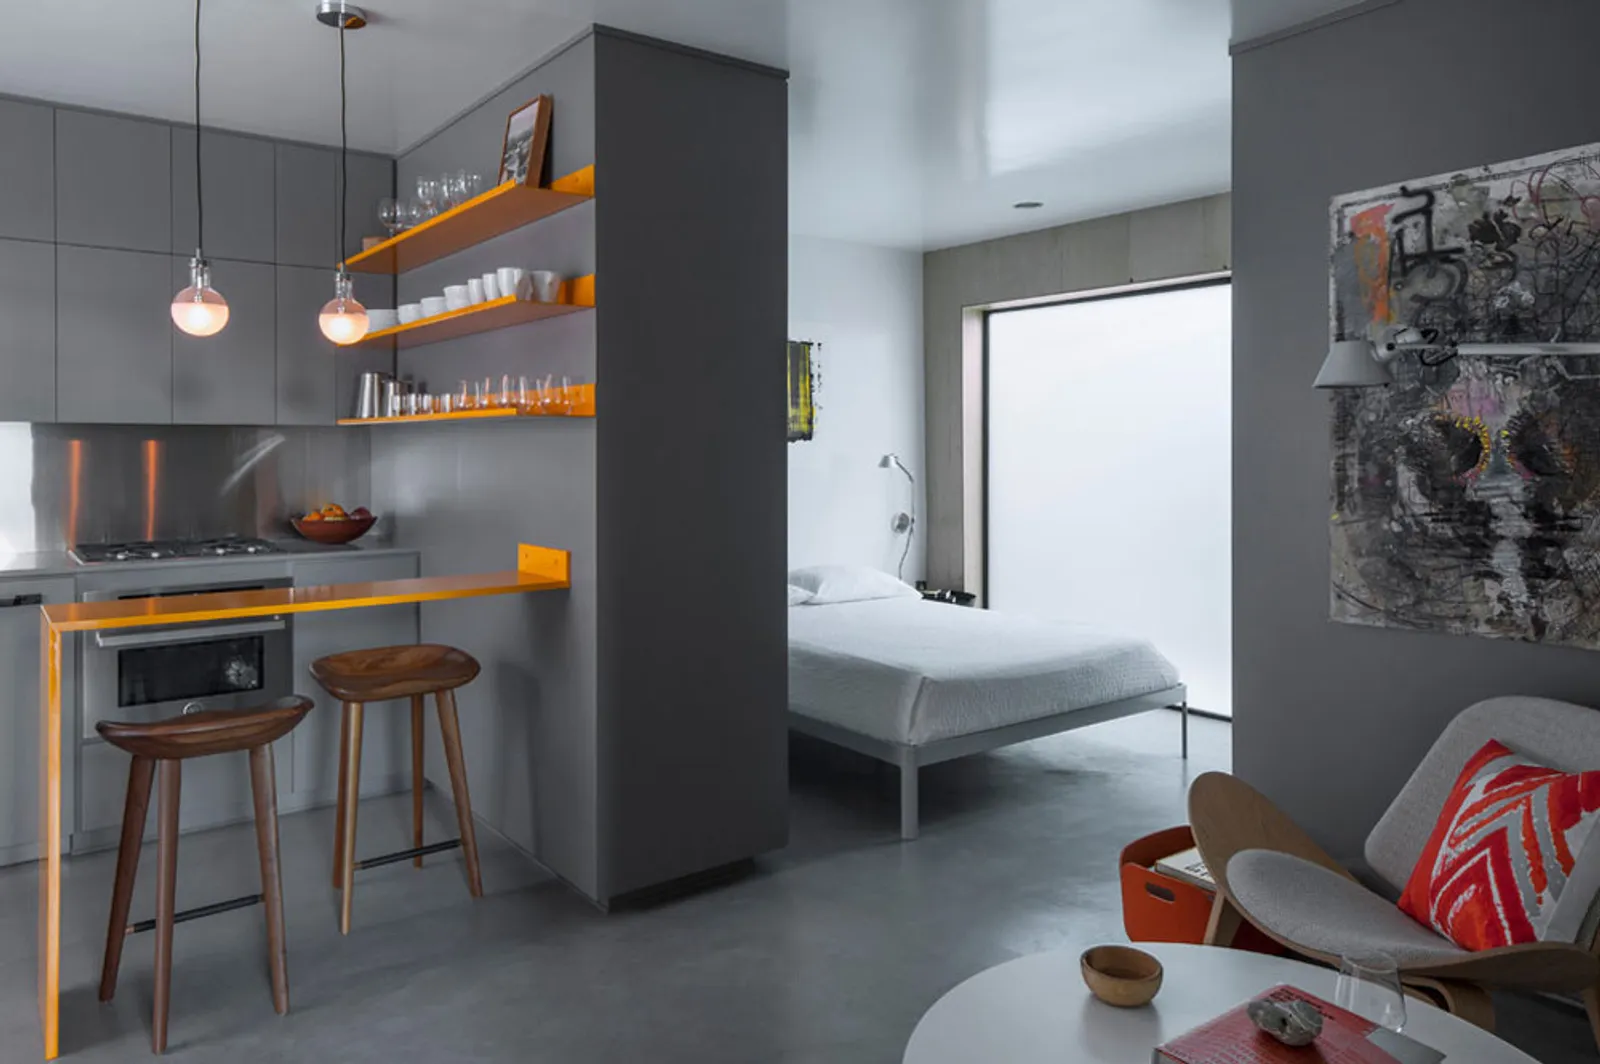 Nyaman dan Bikin Betah, Ini 10 Inspirasi Desain Apartemen Minimalis